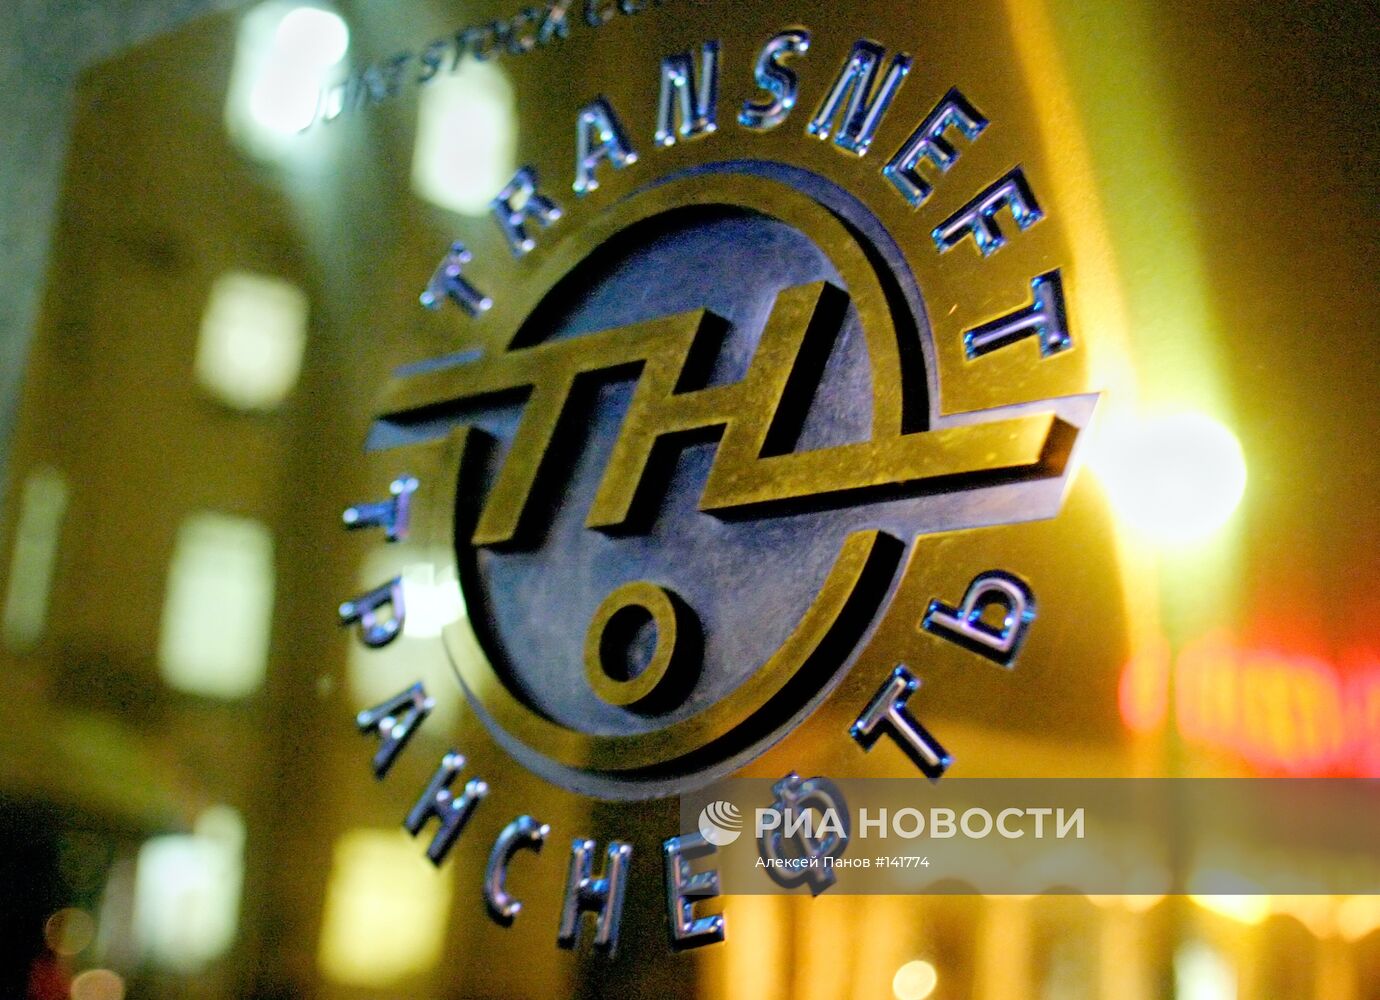 Логотип компании "Транснефть"